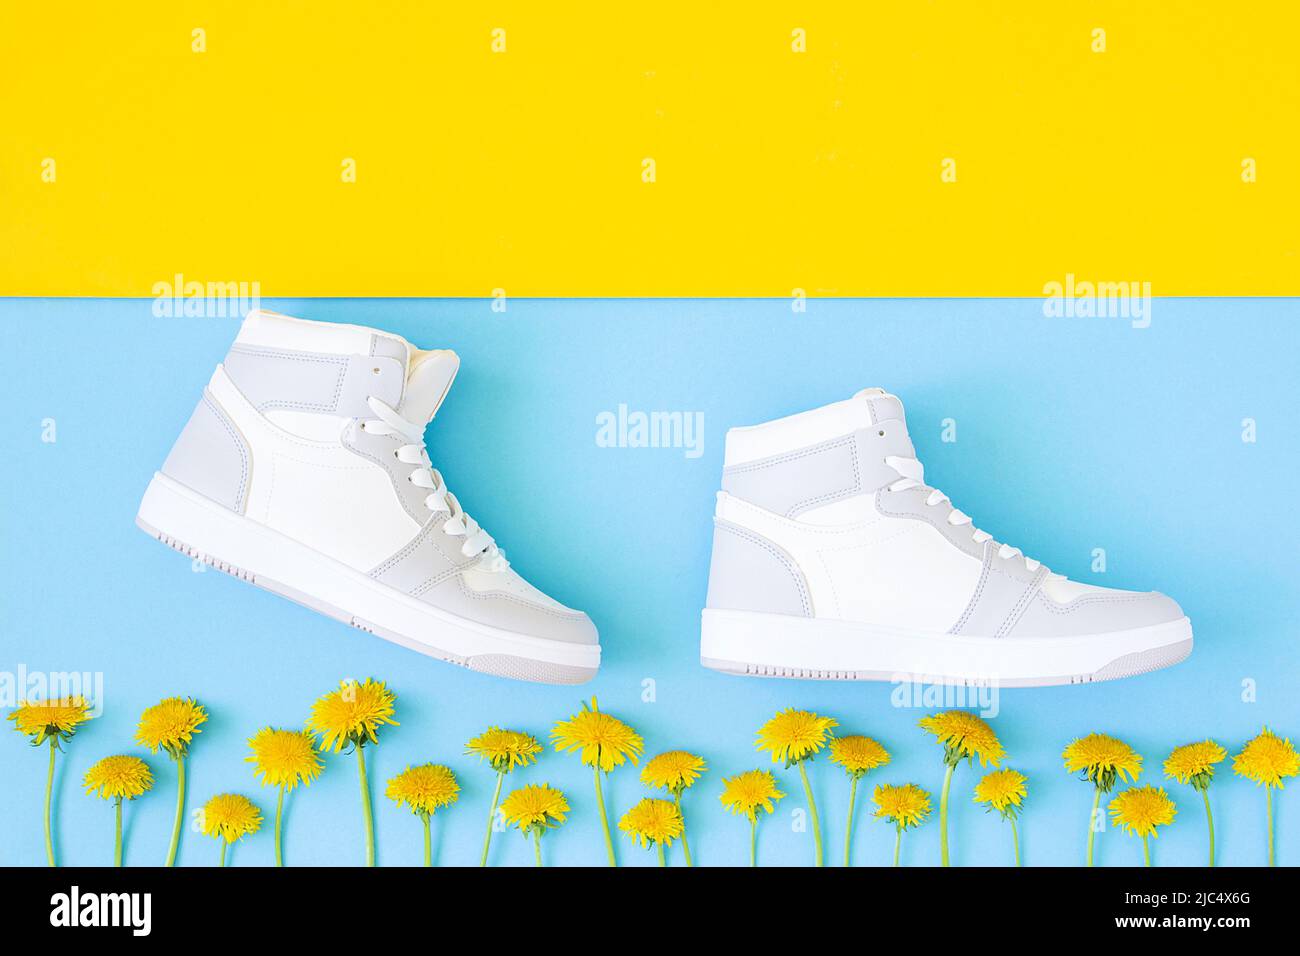 Schuhe und gelbe Blumen auf blaugelbem Hintergrund. Schritt für Schritt in flacher Optik. Erfolg und Entwicklung kreatives Konzept. Draufsicht. Stockfoto